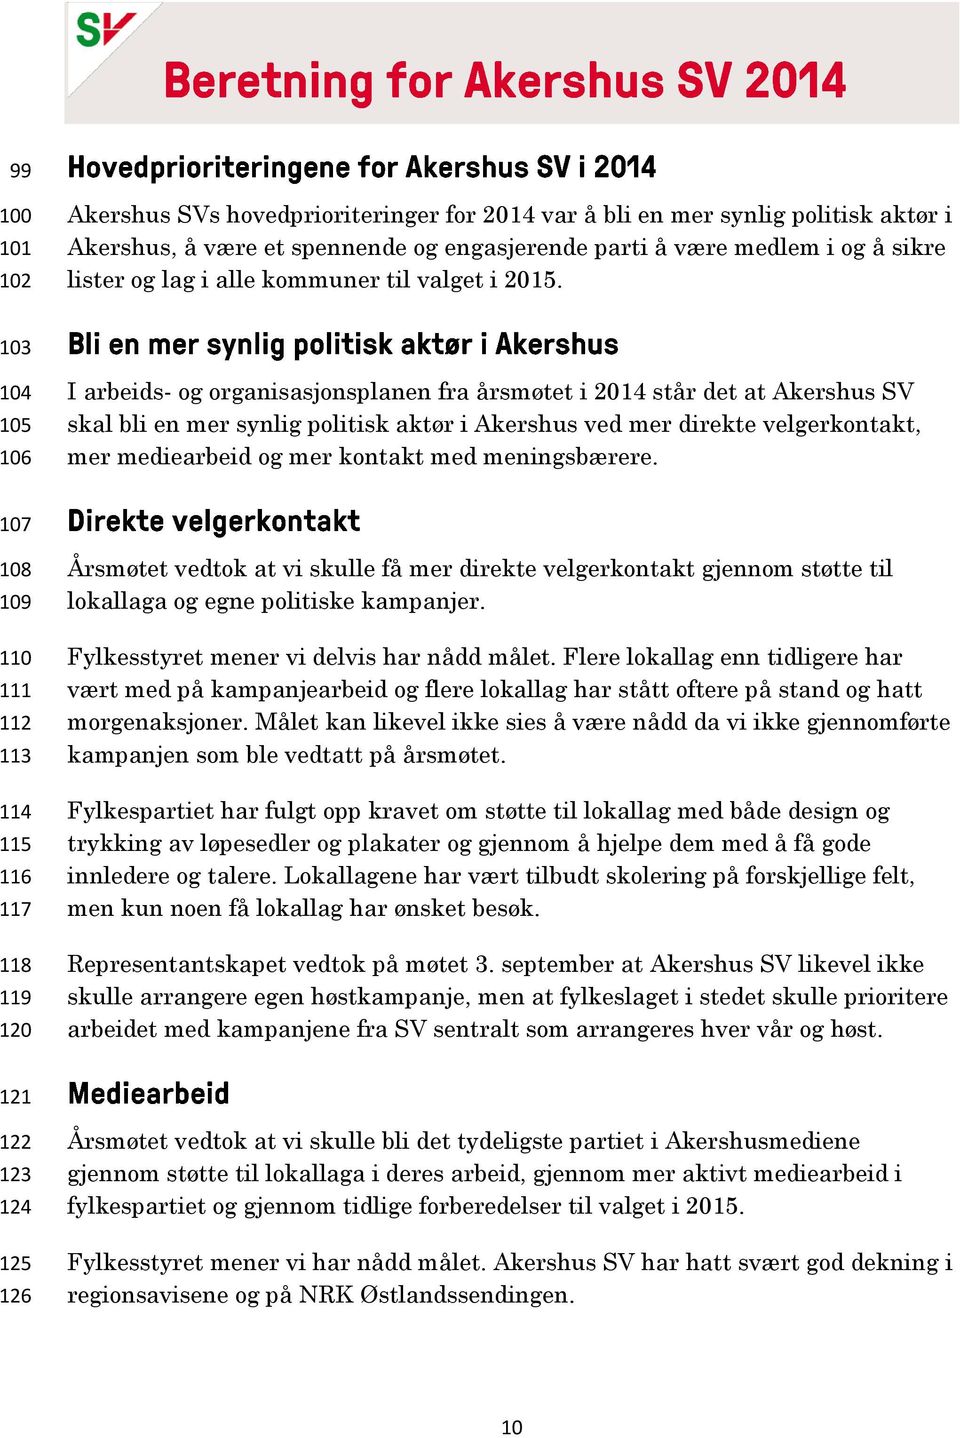 103 104 105 106 I arbeids- og organisasjonsplanen fra årsmøtet i 2014 står det at Akershus SV skal bli en mer synlig politisk aktør i Akershus ved mer direkte velgerkontakt, mer mediearbeid og mer